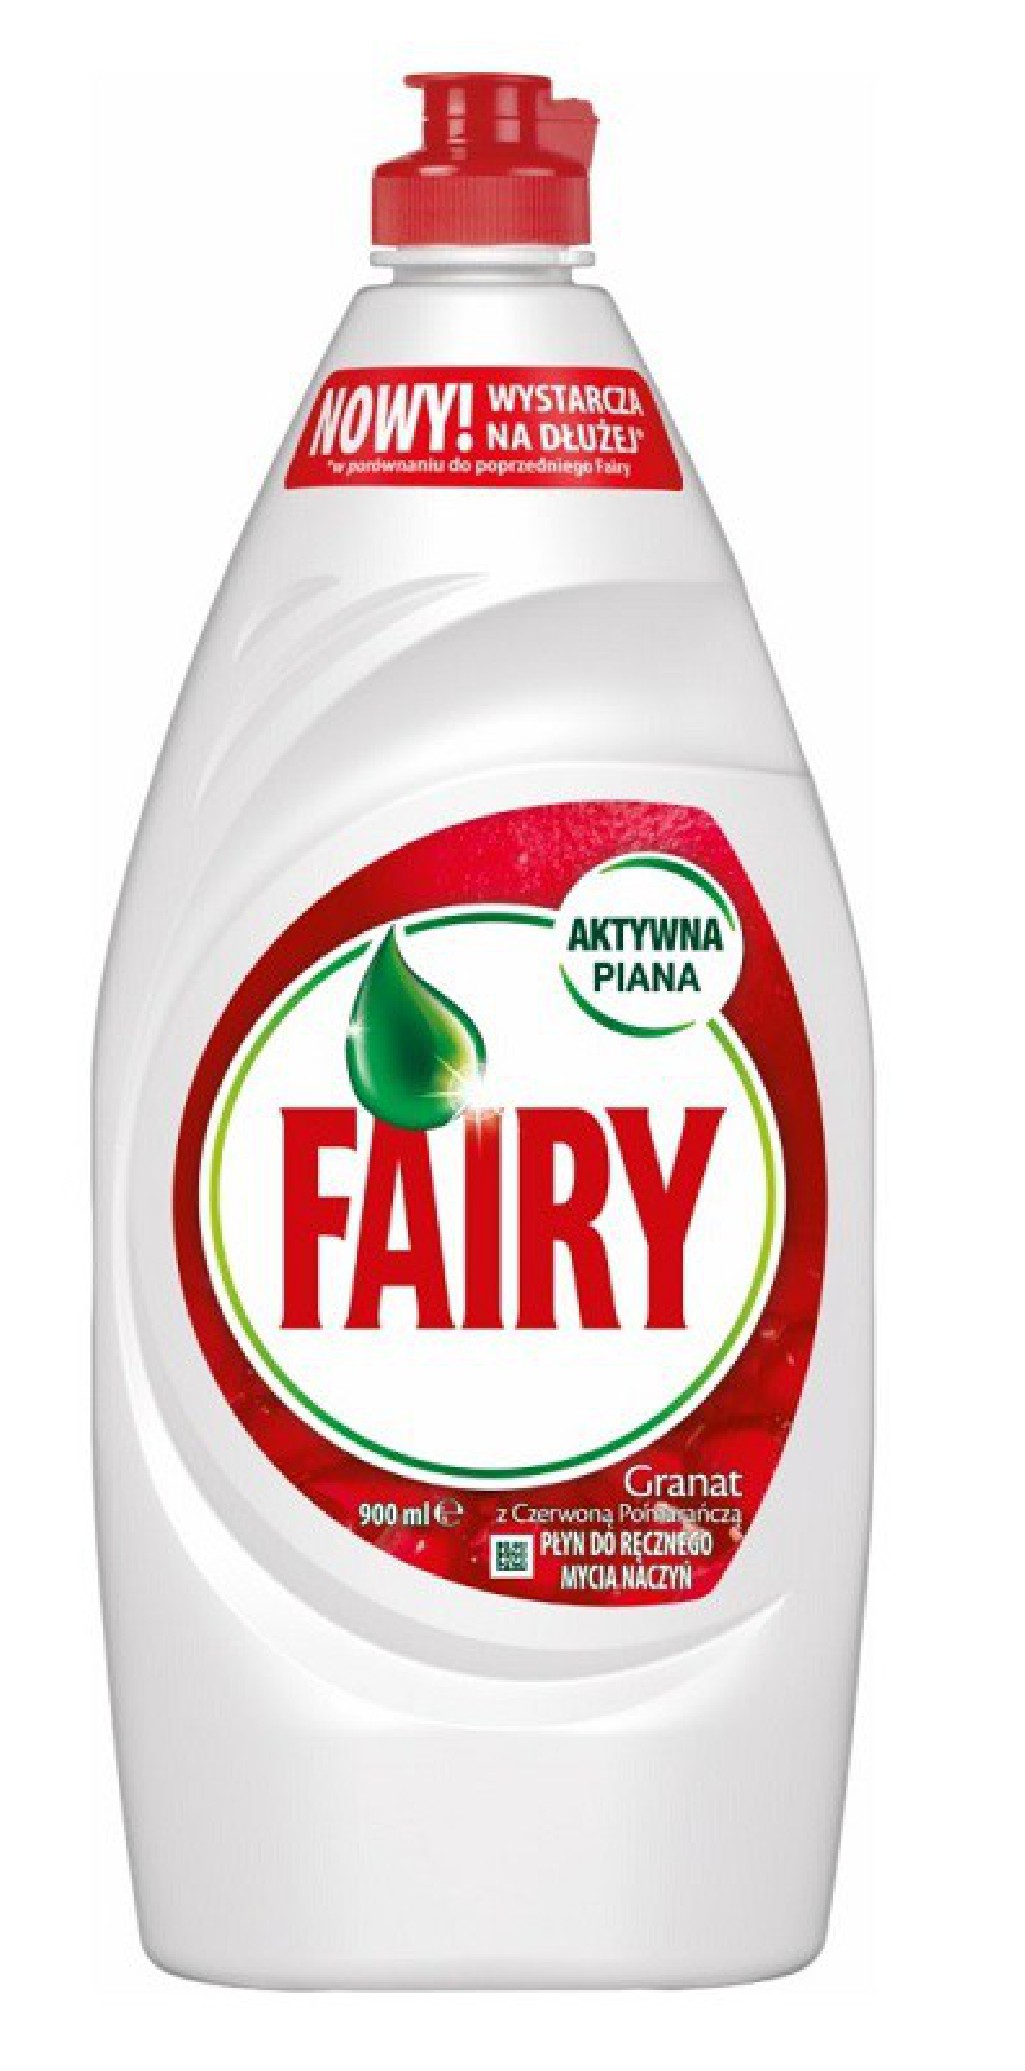 Fairy Płyn do mycia naczyń granat 900 ml